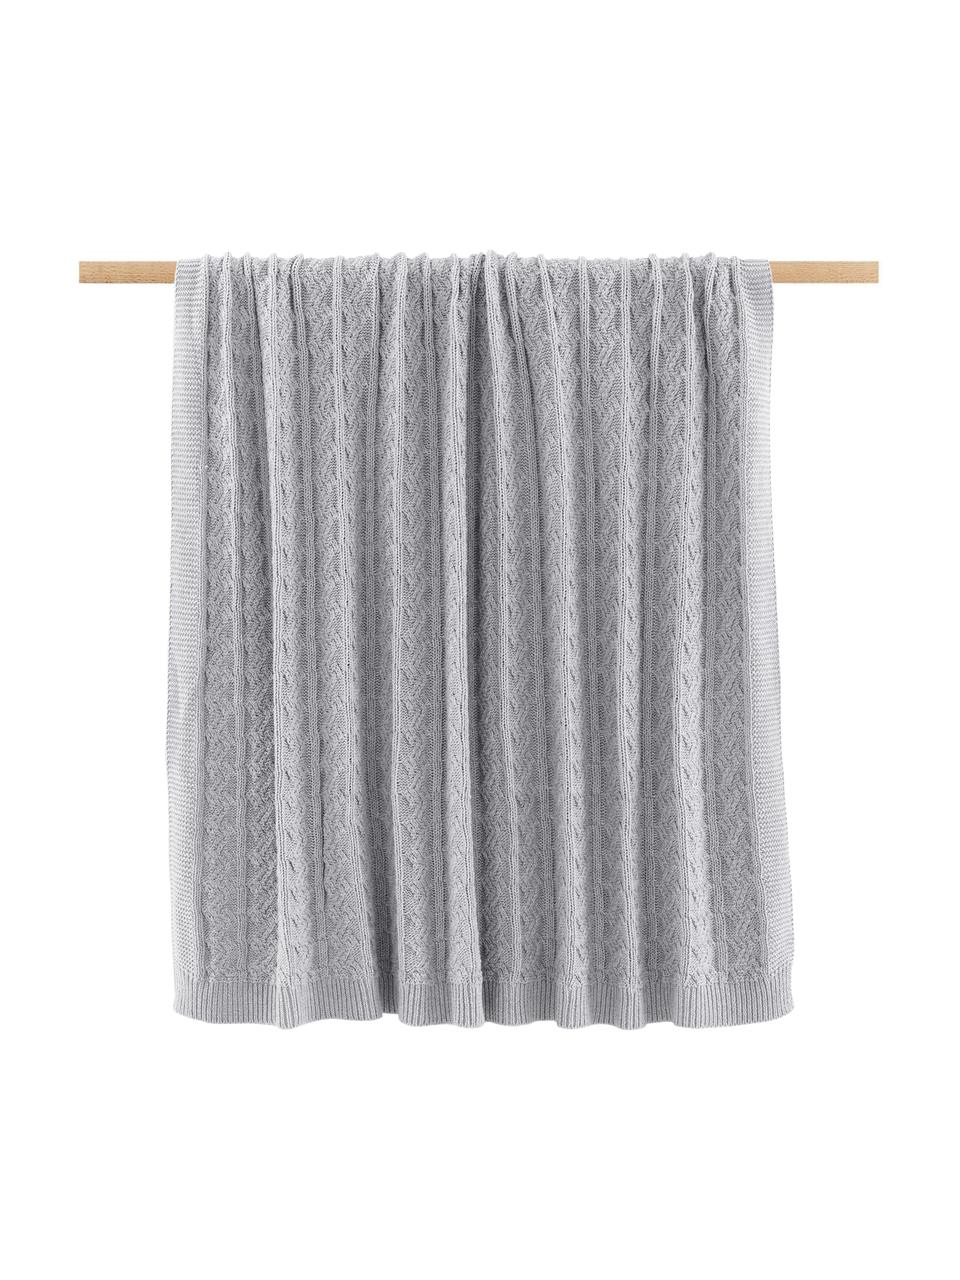 Gebreide deken Caleb in grijs met kabelpatroon, 100% katoen, Grijs, B 130 x L 170 cm